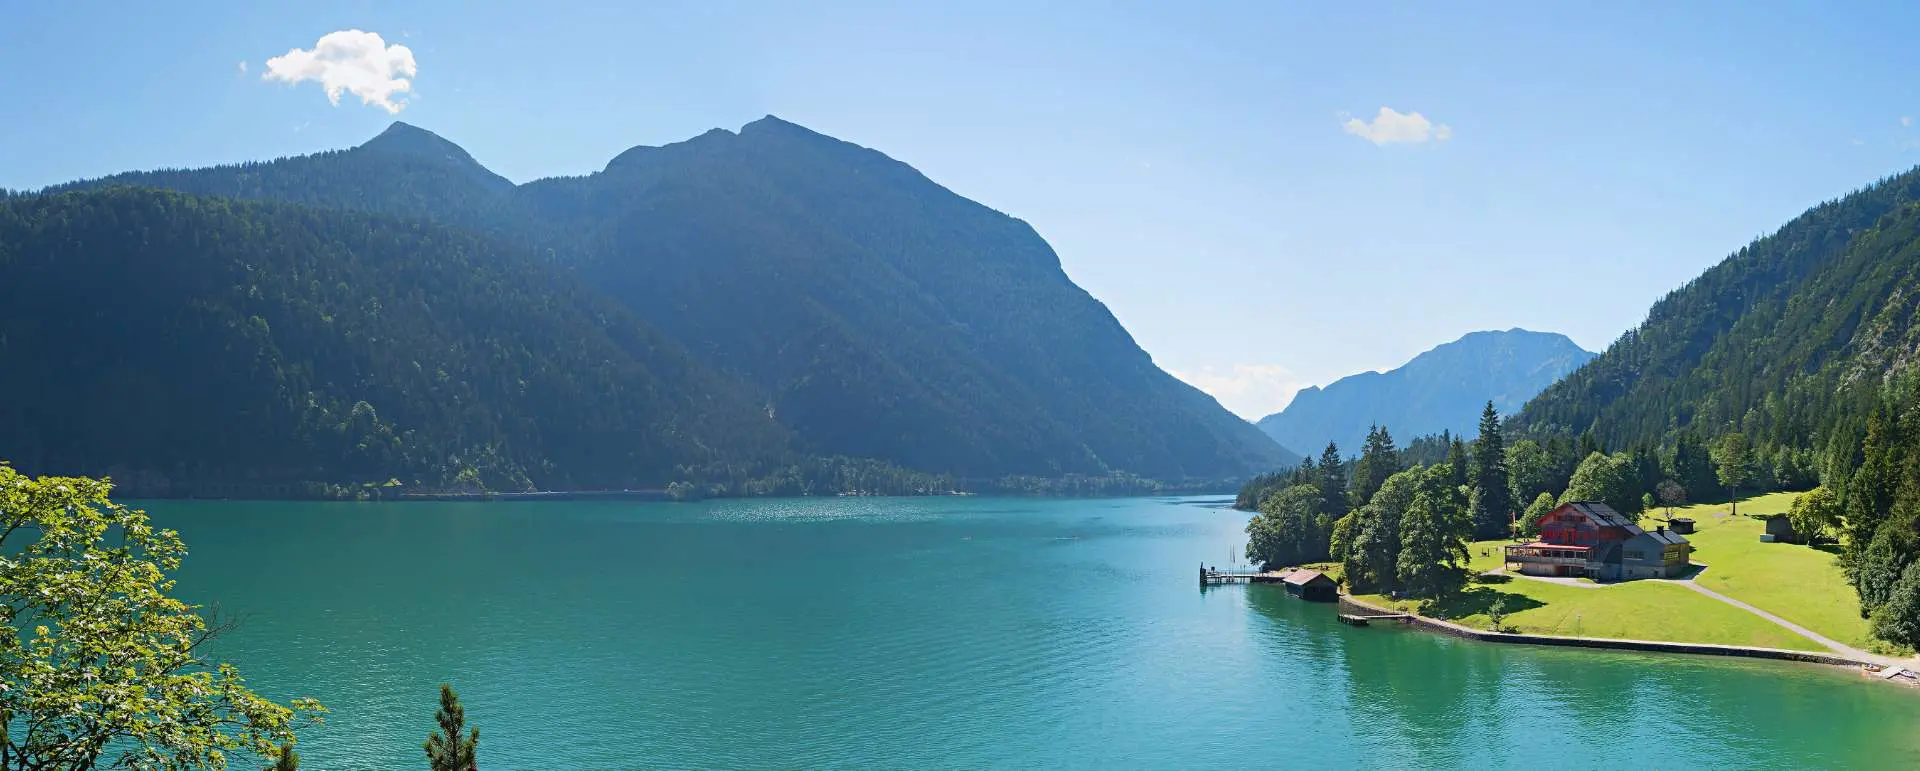 Achen Lake - the destination for families